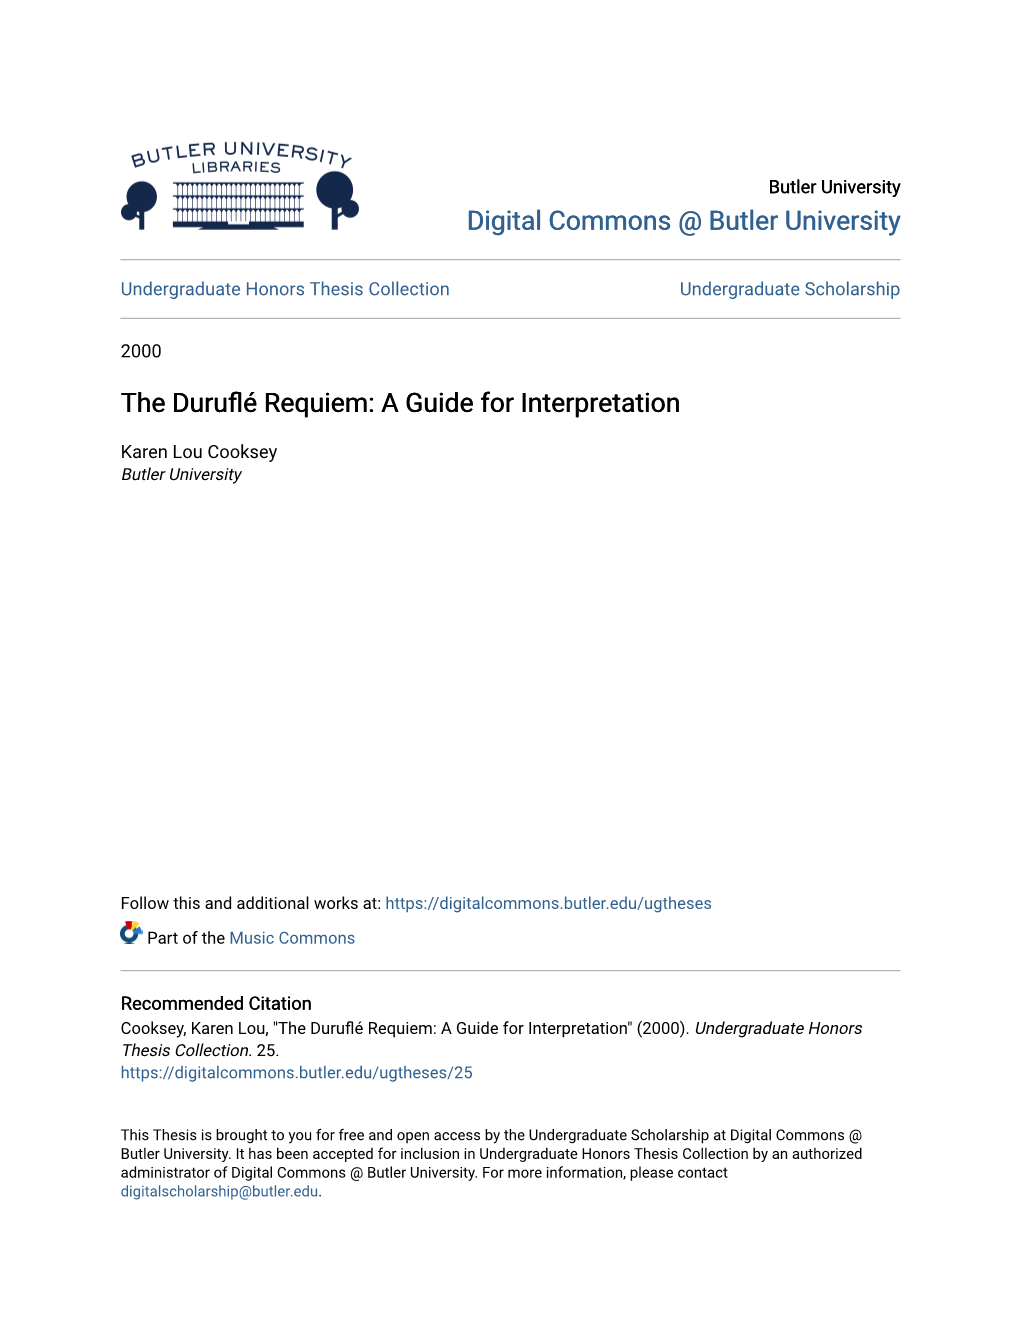 The Duruflé Requiem: a Guide for Interpretation